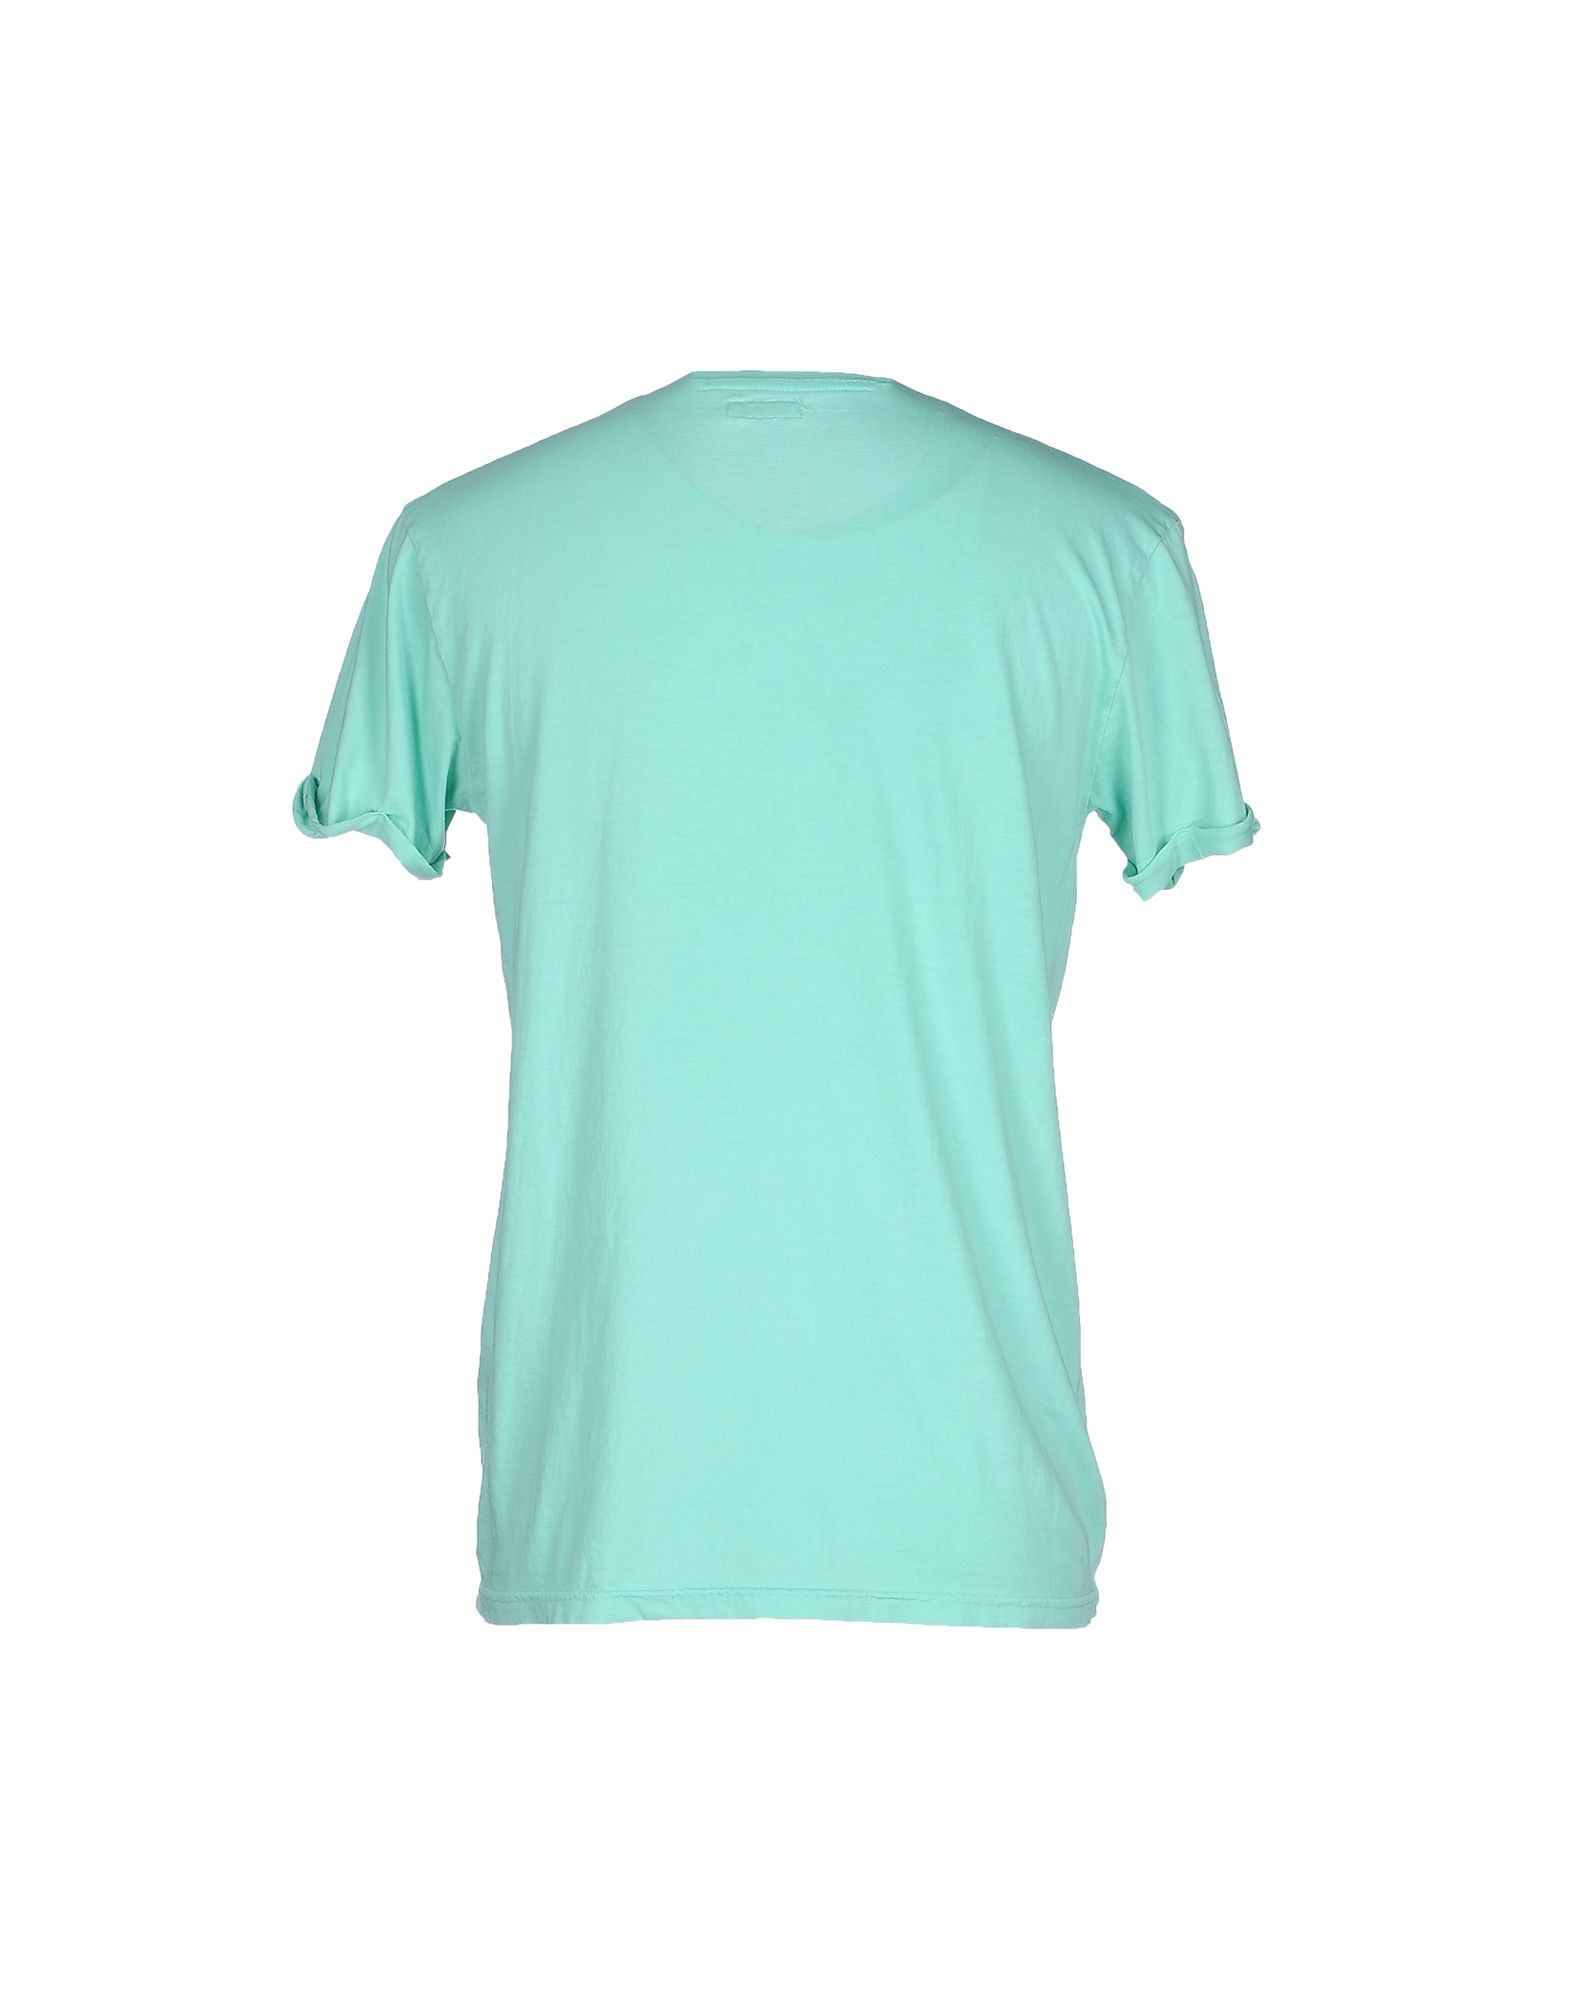 Lyst - Bomboogie T-shirt in Green for Men